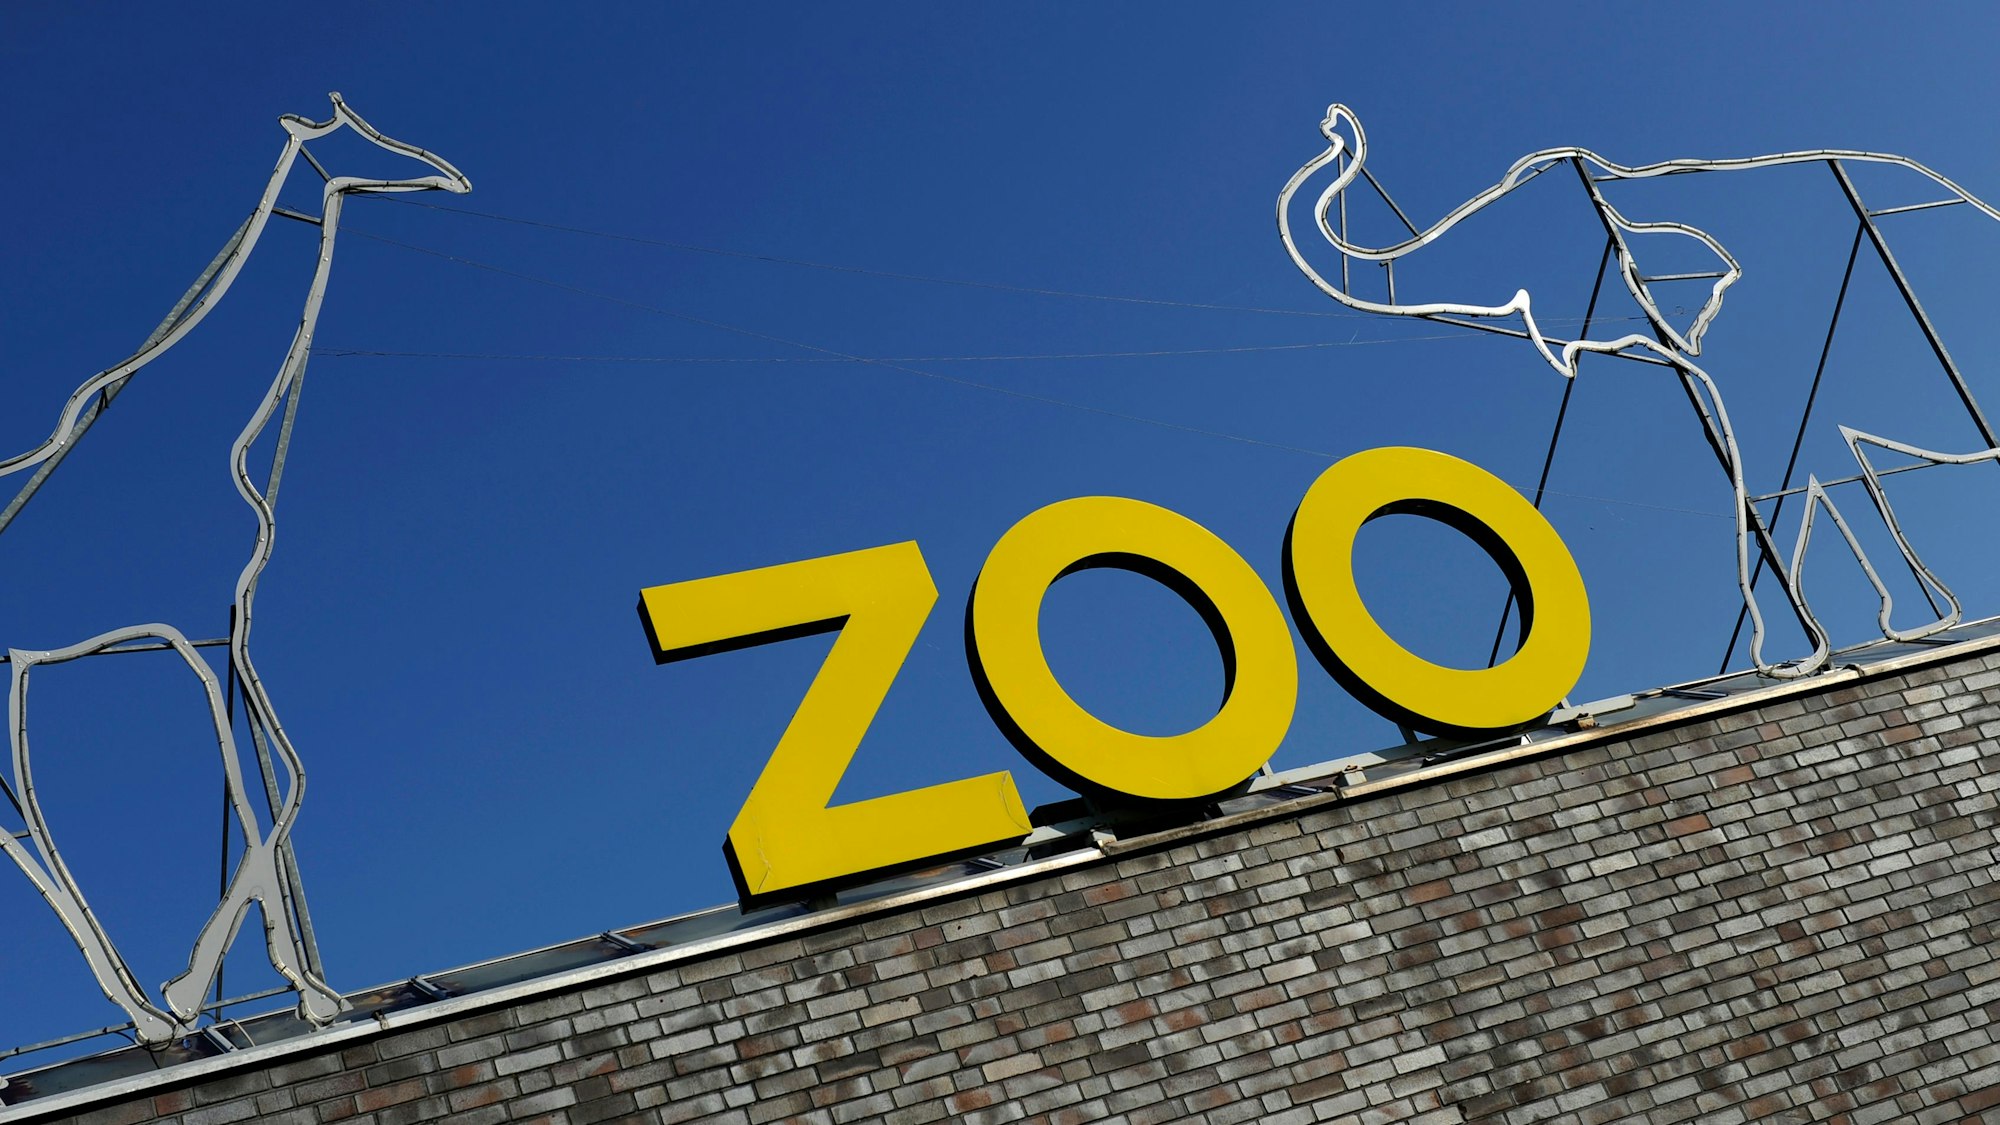 Der Kölner Zoo trauert um „Ailton“. Das Foto zeigt die Mauer und den Schriftzug „Zoo“ am Kölner Zoo.